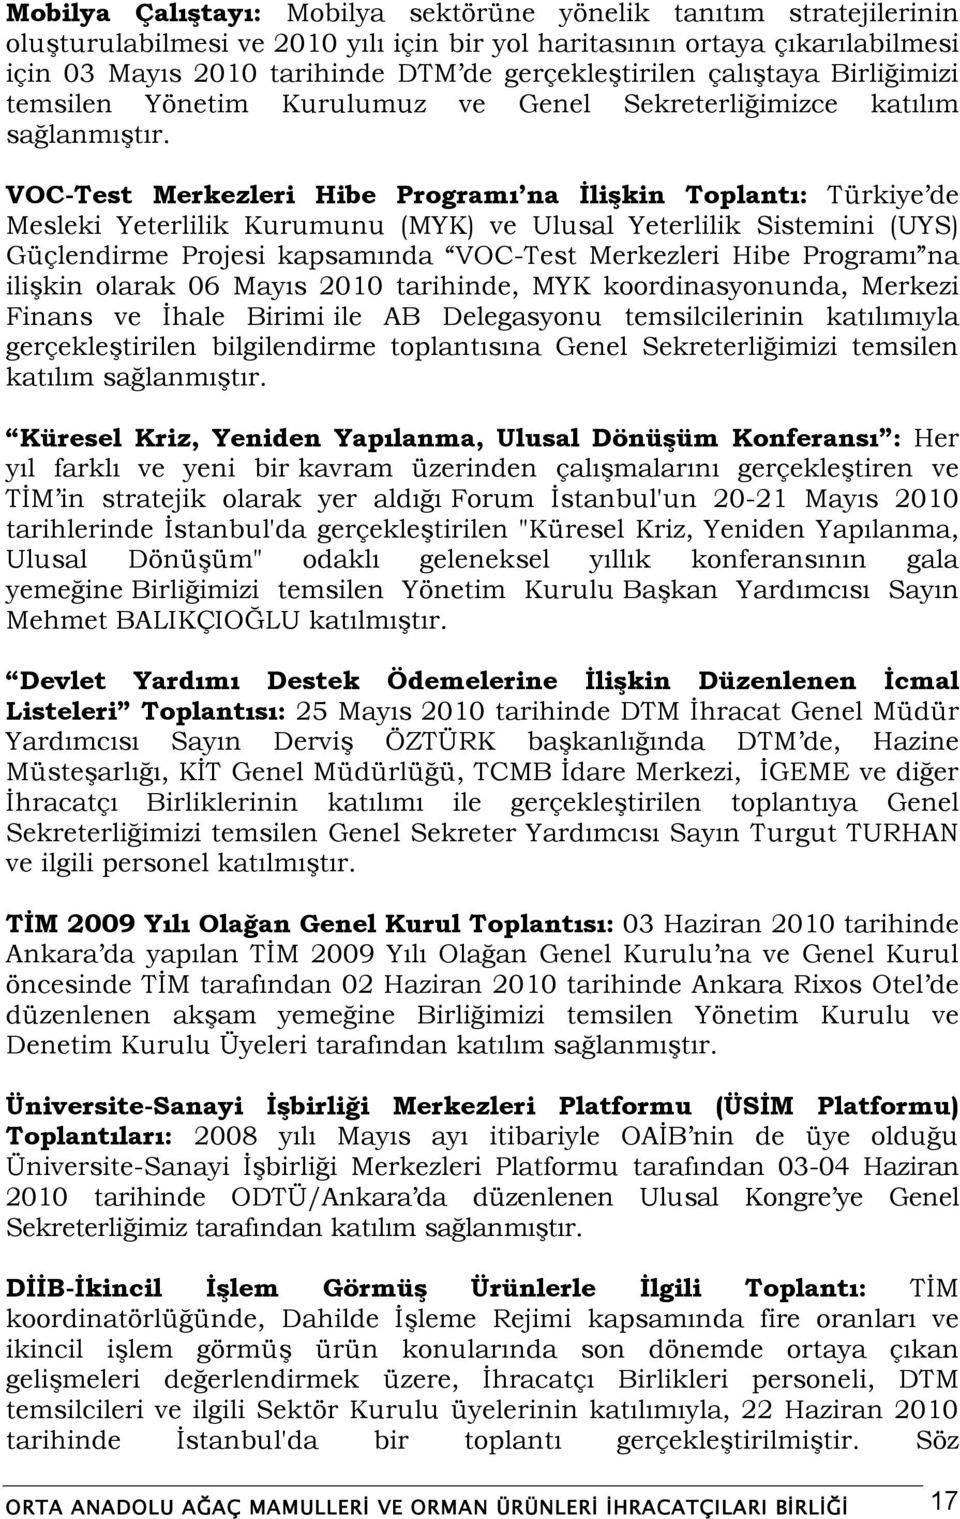 VOC-Test Merkezleri Hibe Programı na Ġlişkin Toplantı: Türkiye de Mesleki Yeterlilik Kurumunu (MYK) ve Ulusal Yeterlilik Sistemini (UYS) Güçlendirme Projesi kapsamında VOC-Test Merkezleri Hibe